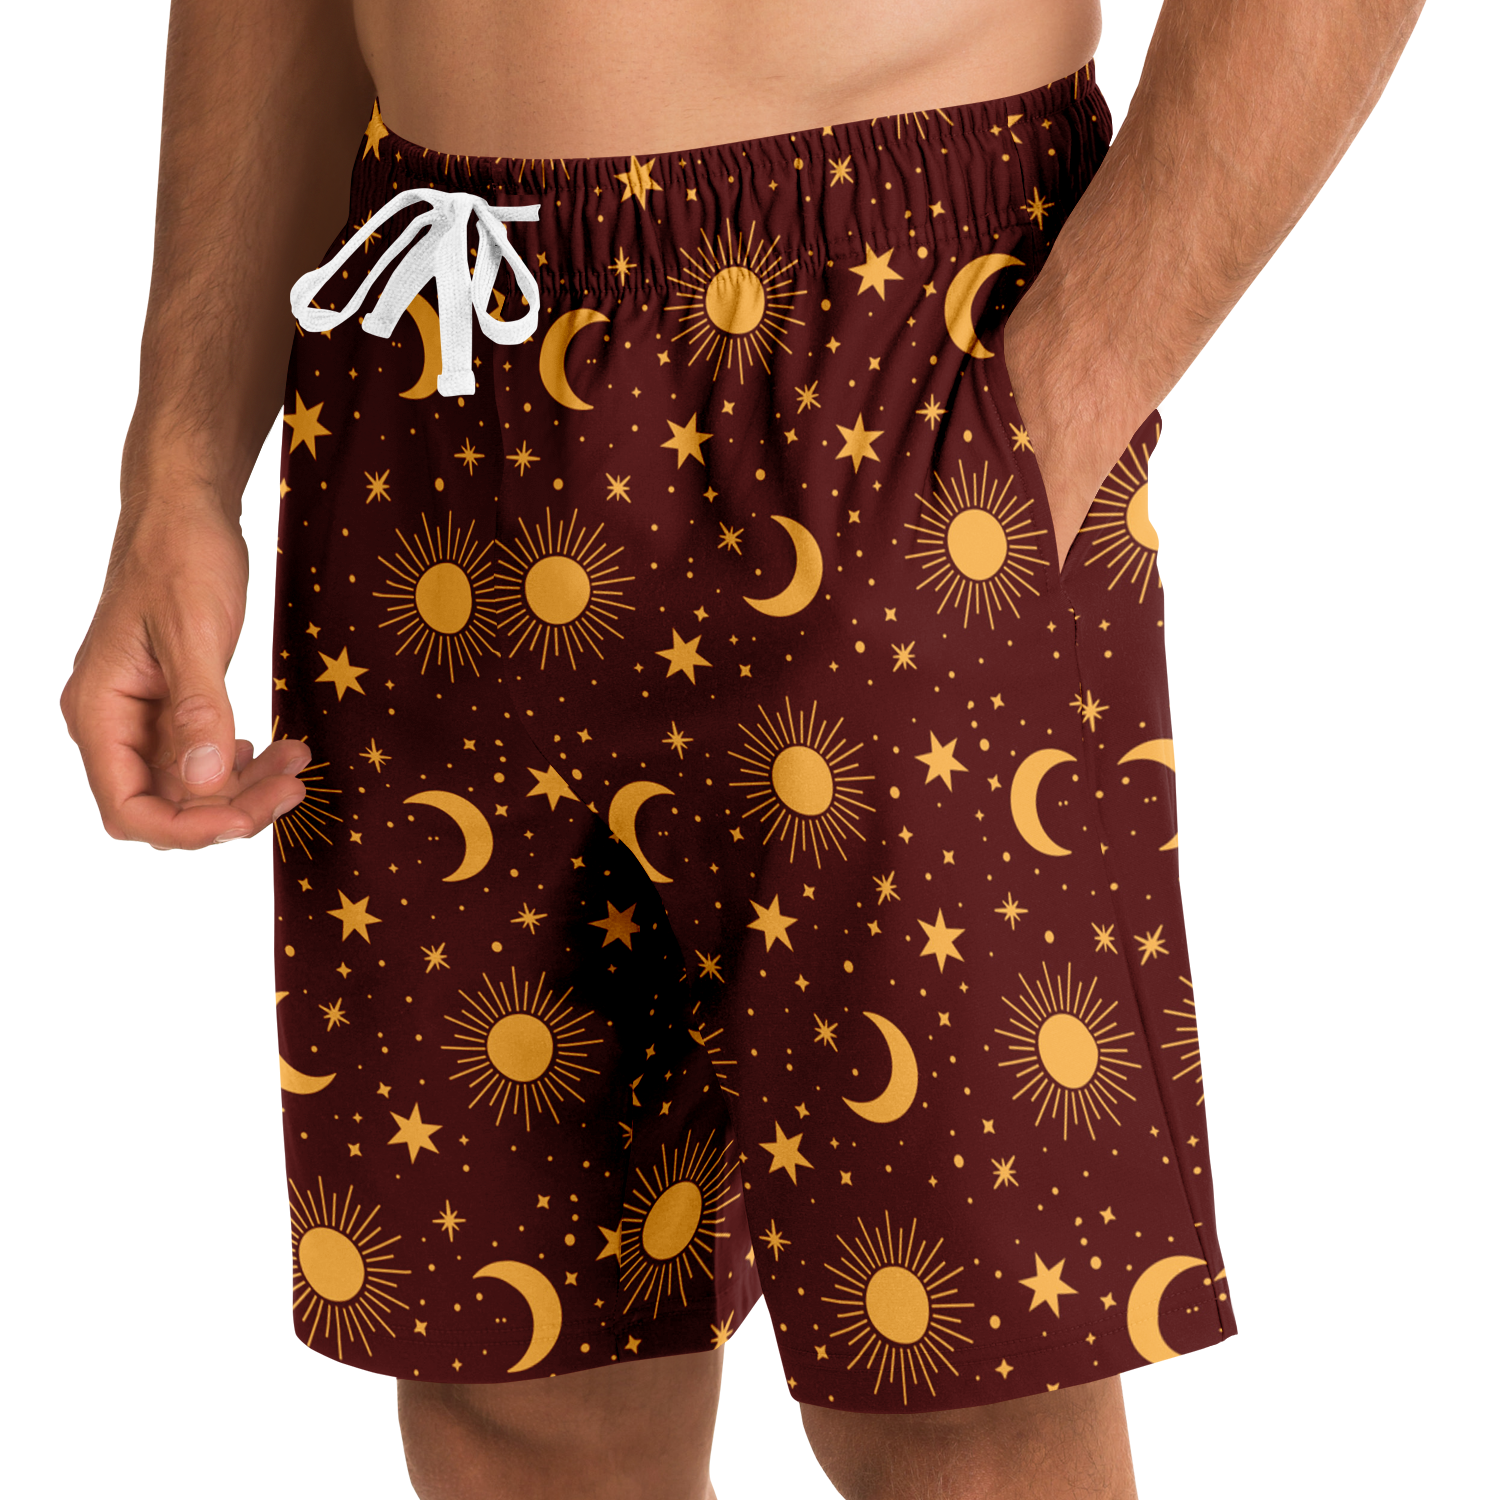 <alt.Stellar Shine Men's Shorts - Taufaa>